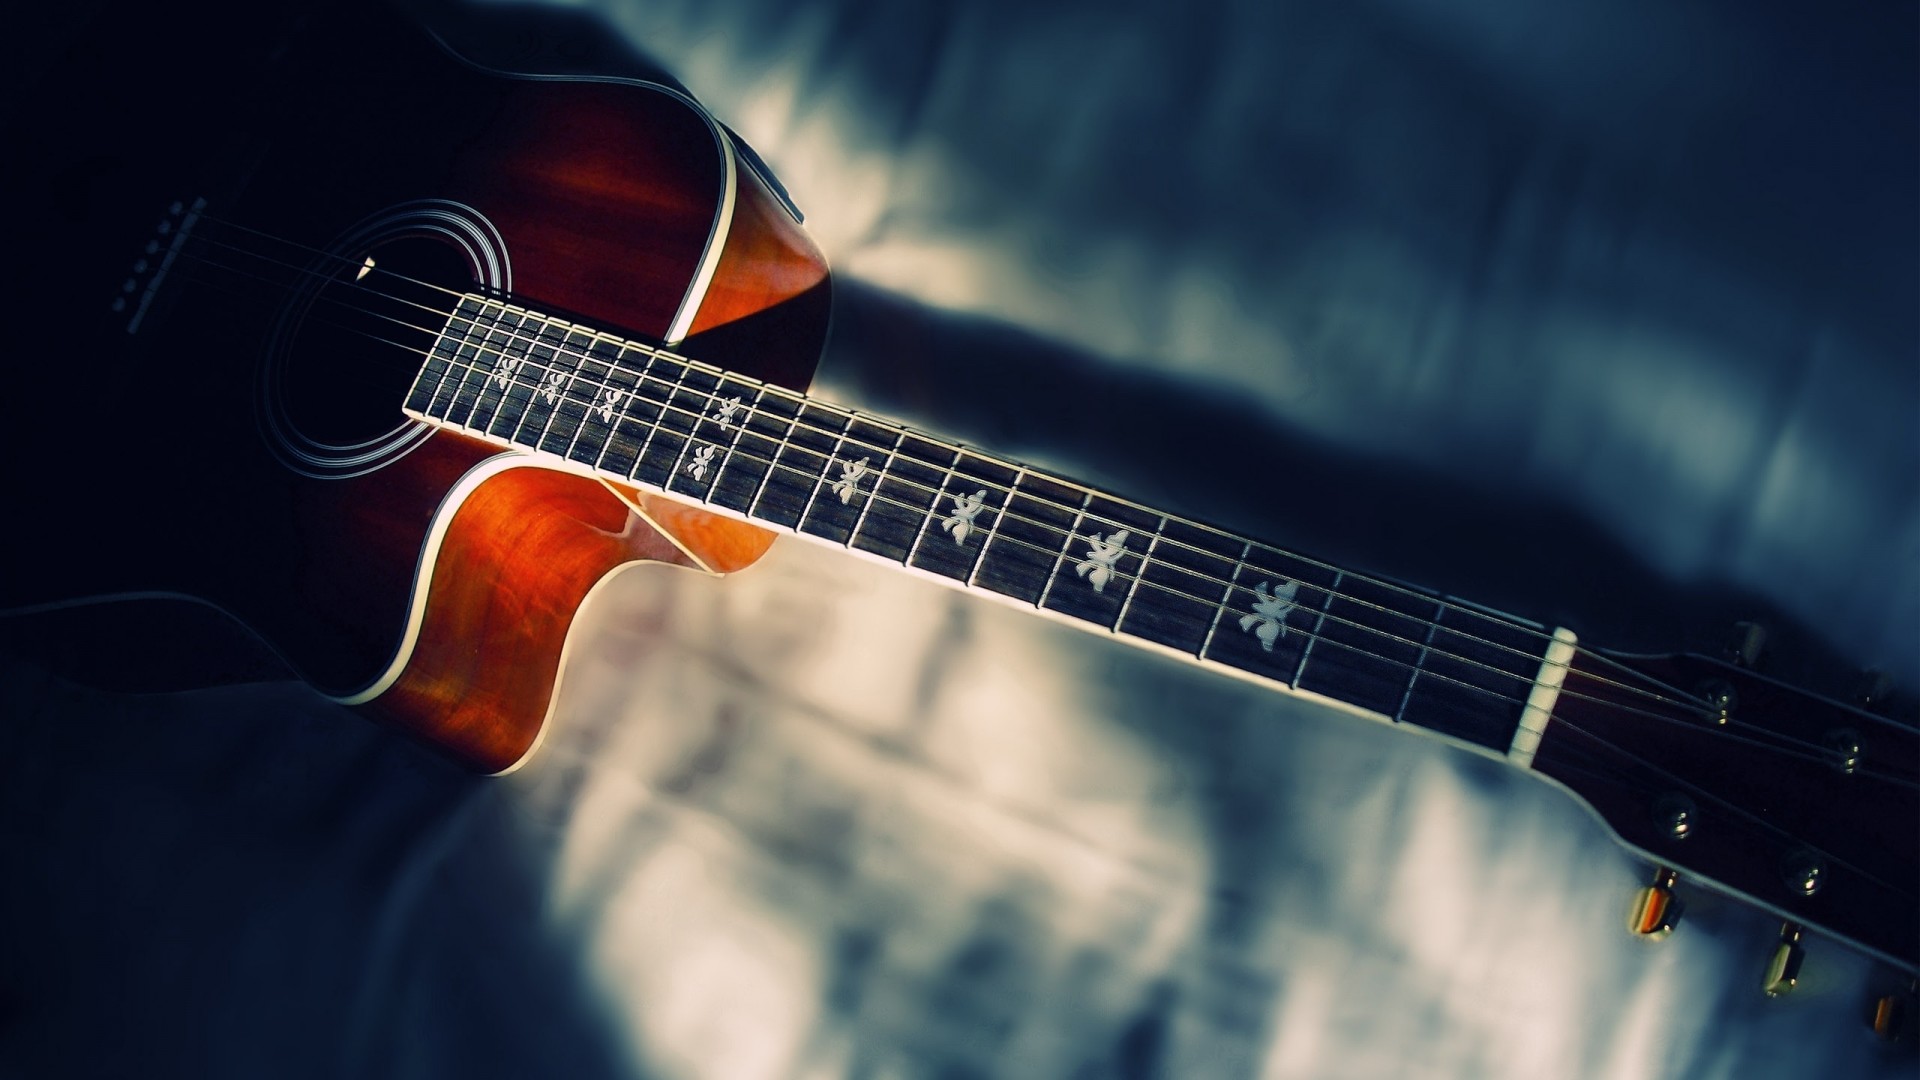 1920x1080 Bass Guitar Lessons | Download Wallpaper | Pinterest | Bass guitar lessons